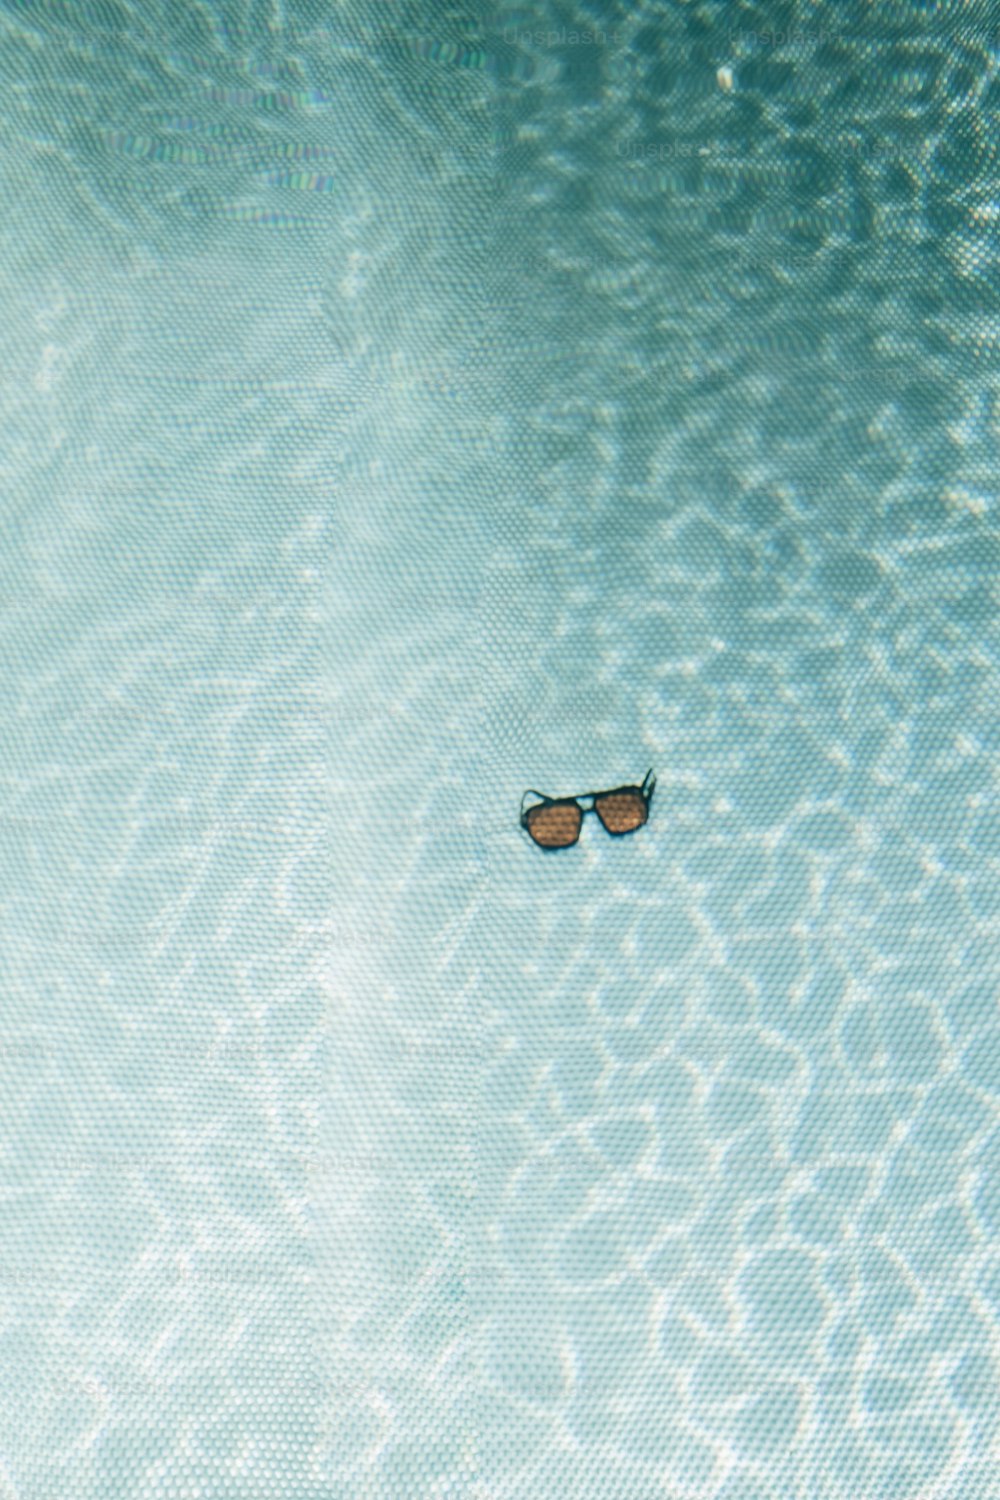 une paire de lunettes de soleil flottant dans une piscine d’eau